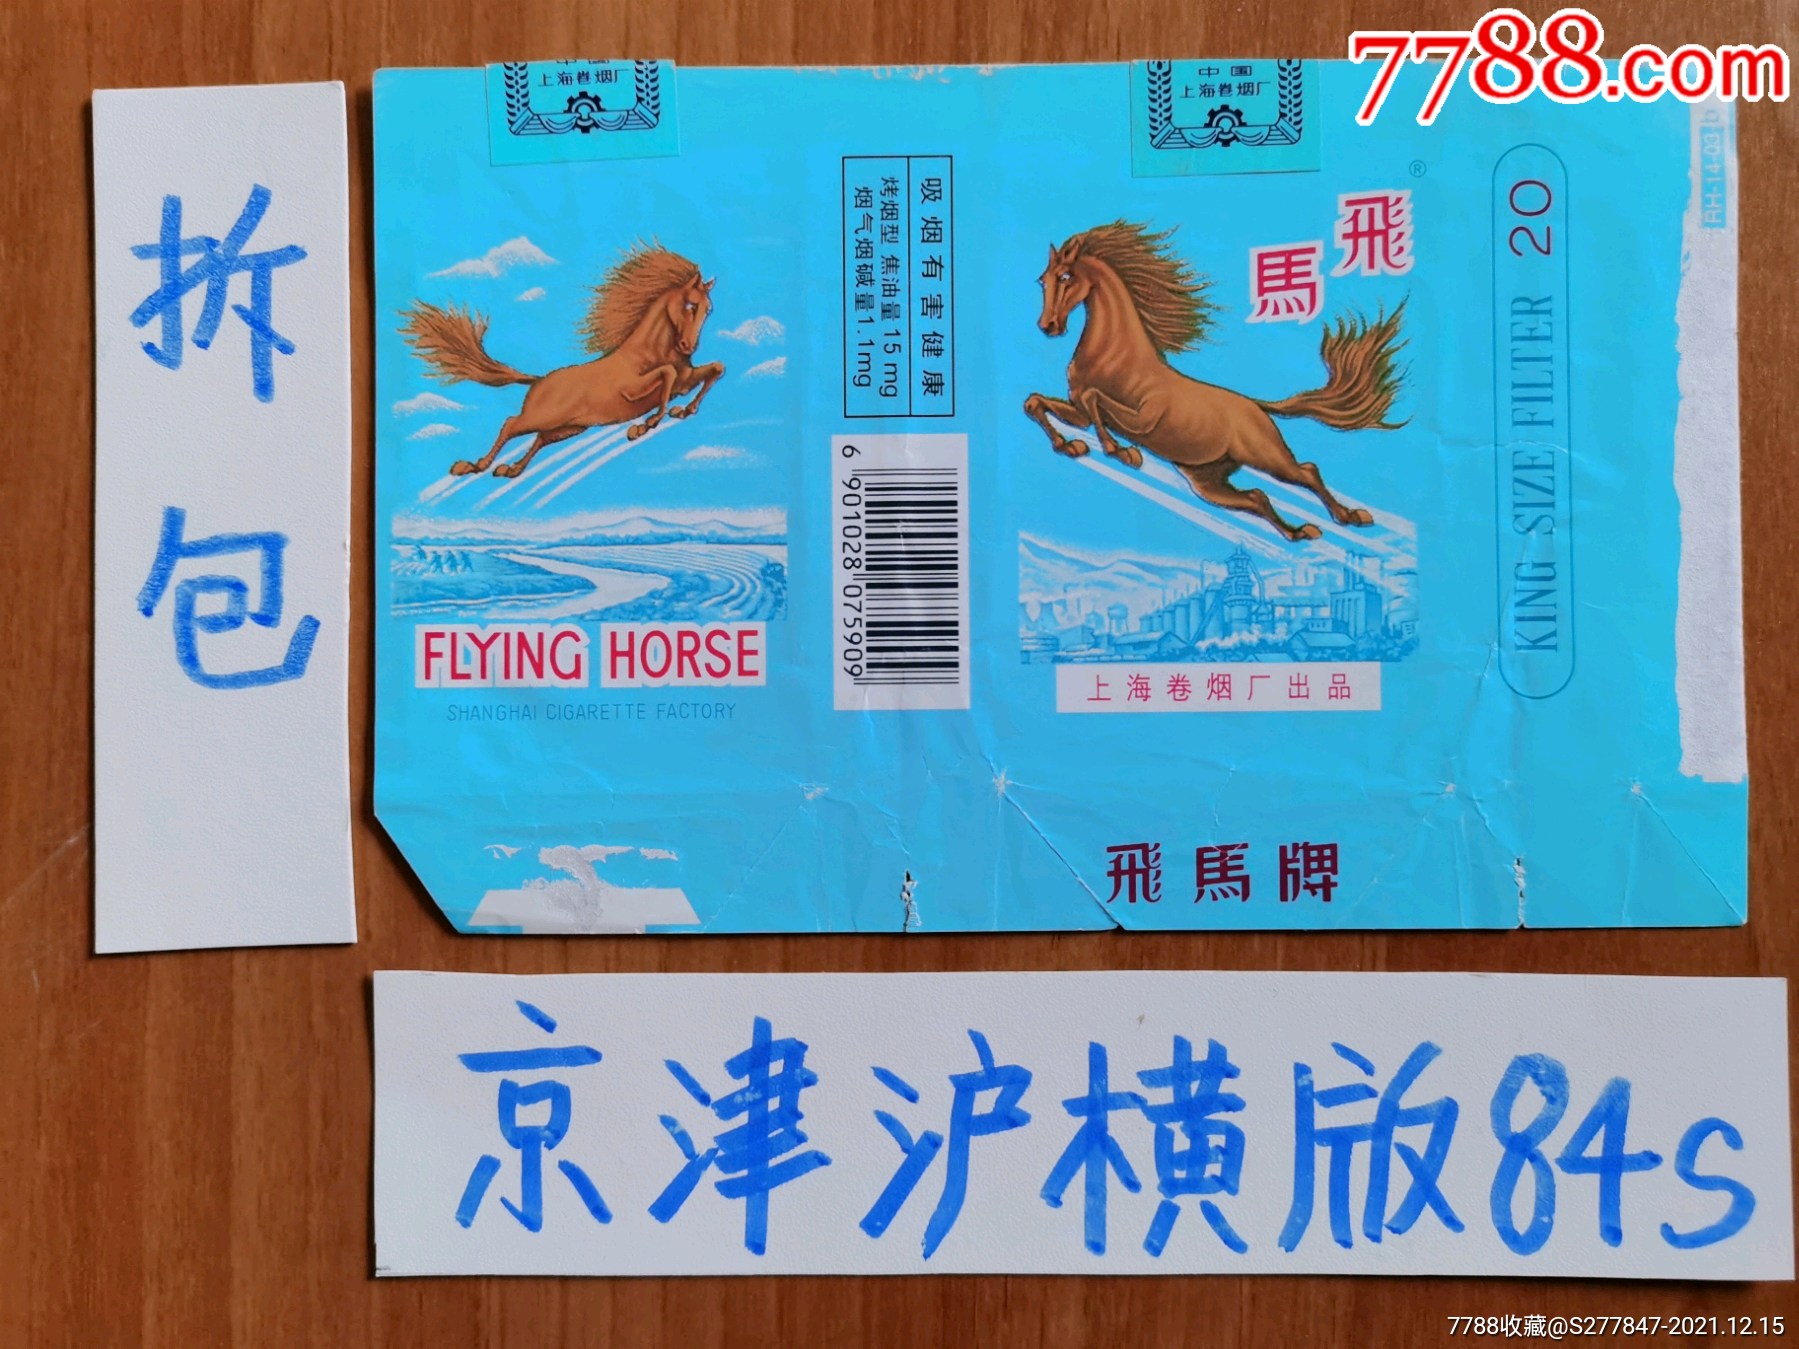 上海飞马新版硬盒香烟图片